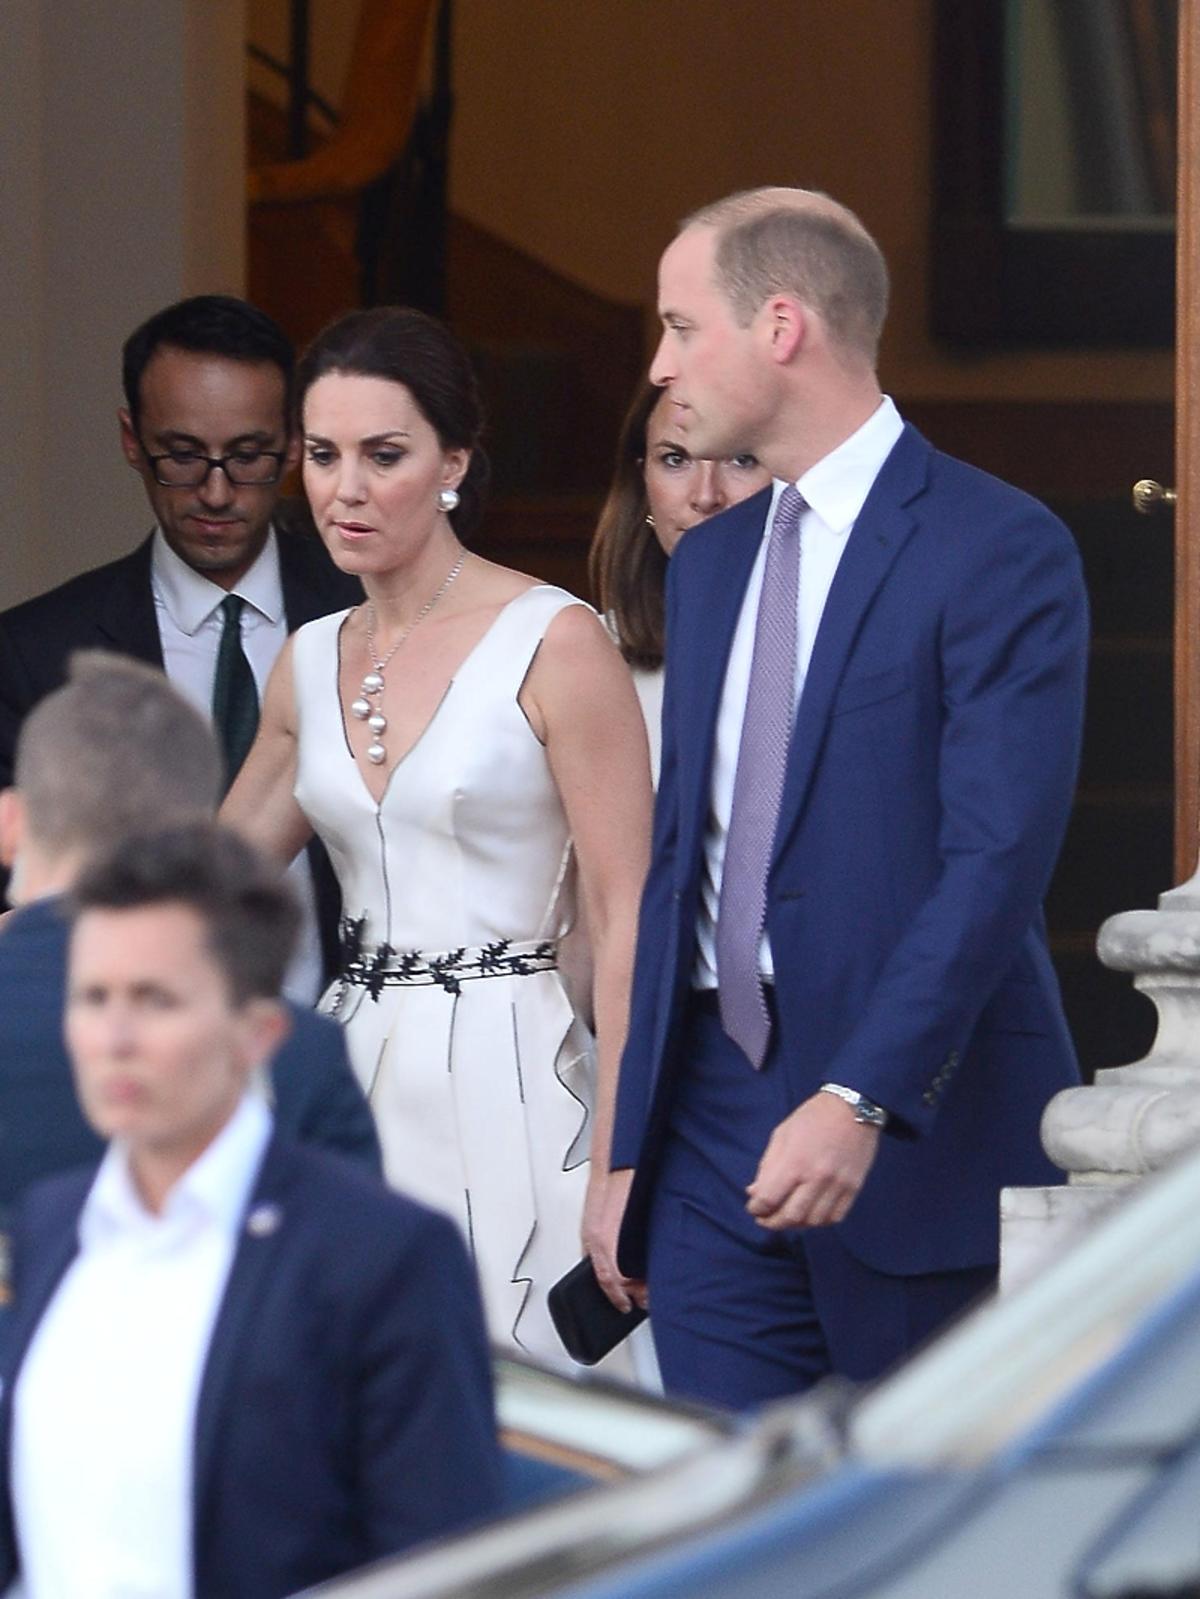 Księżna Kate zachwyciła w białej sukni na balu w Łazienkach! Ładniej od Agaty Dudy? ZDJĘCIA